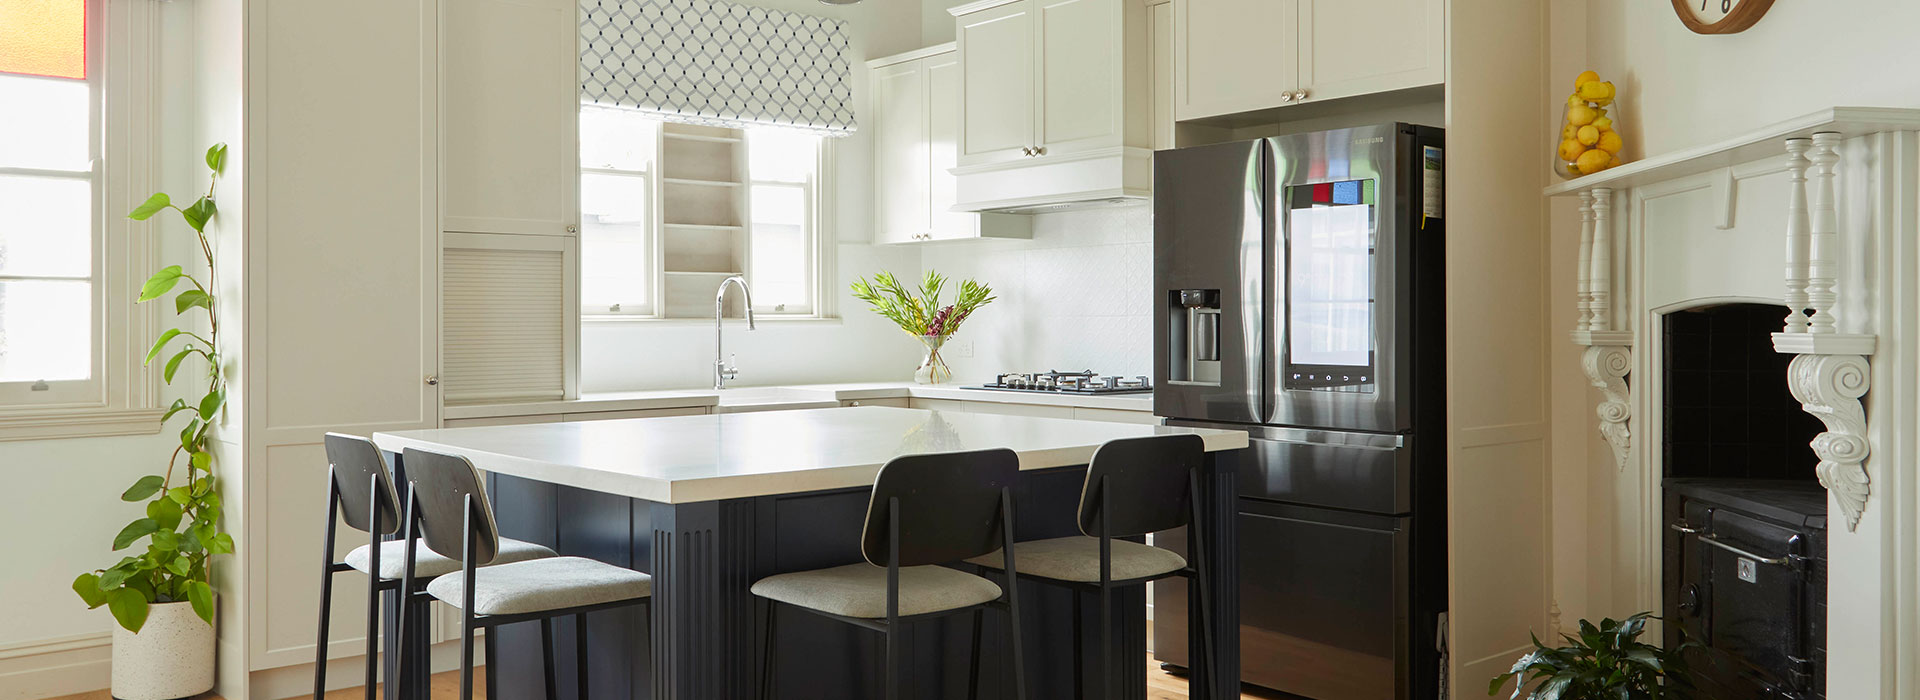 advanced cabinetry kitchen design ballarat